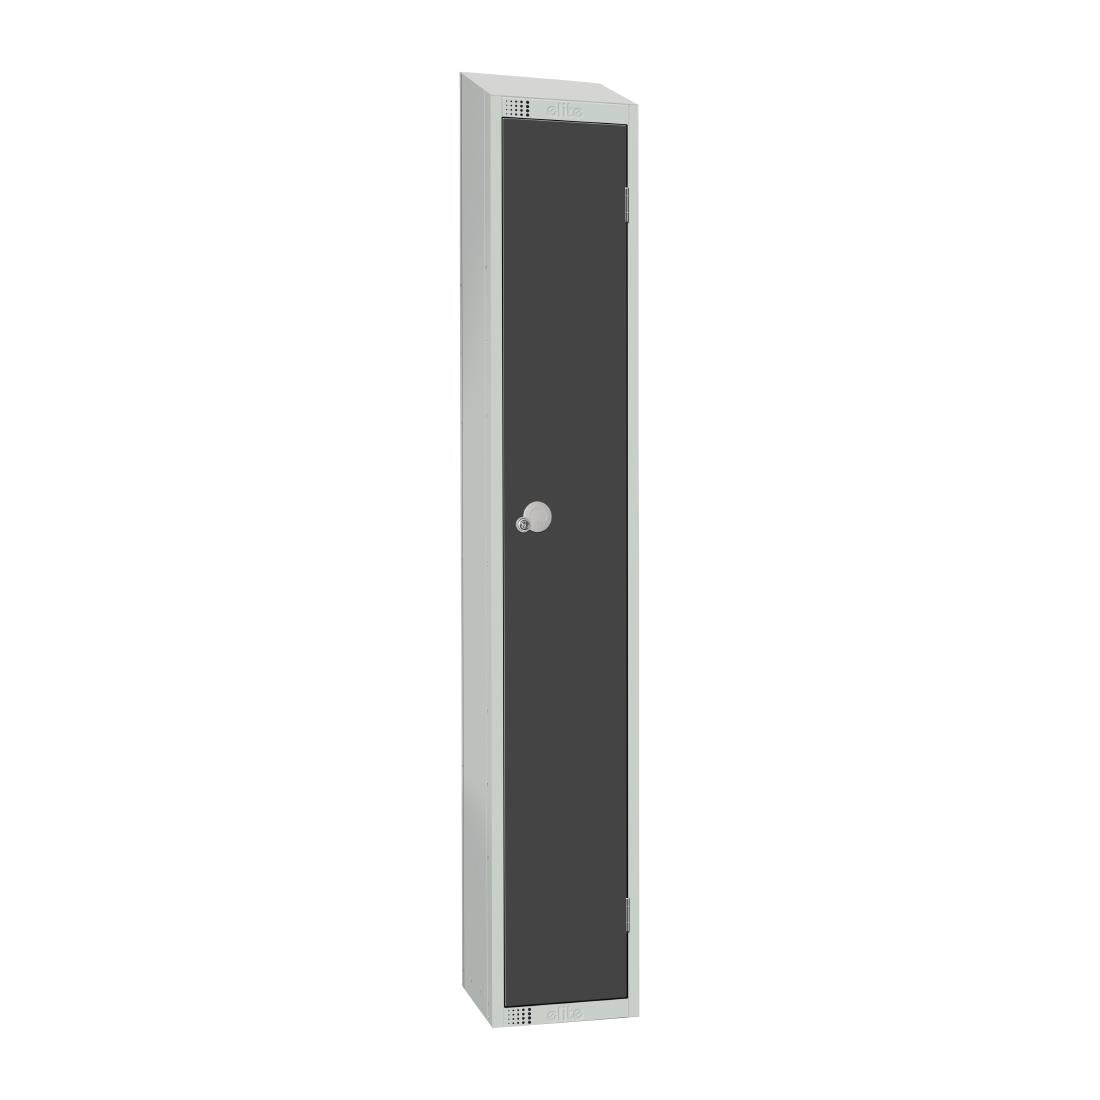 GR677-CS Elite Single Door Camlock Locker Graphite Grey with Sloping Top JD Catering Equipment Solutions Ltd